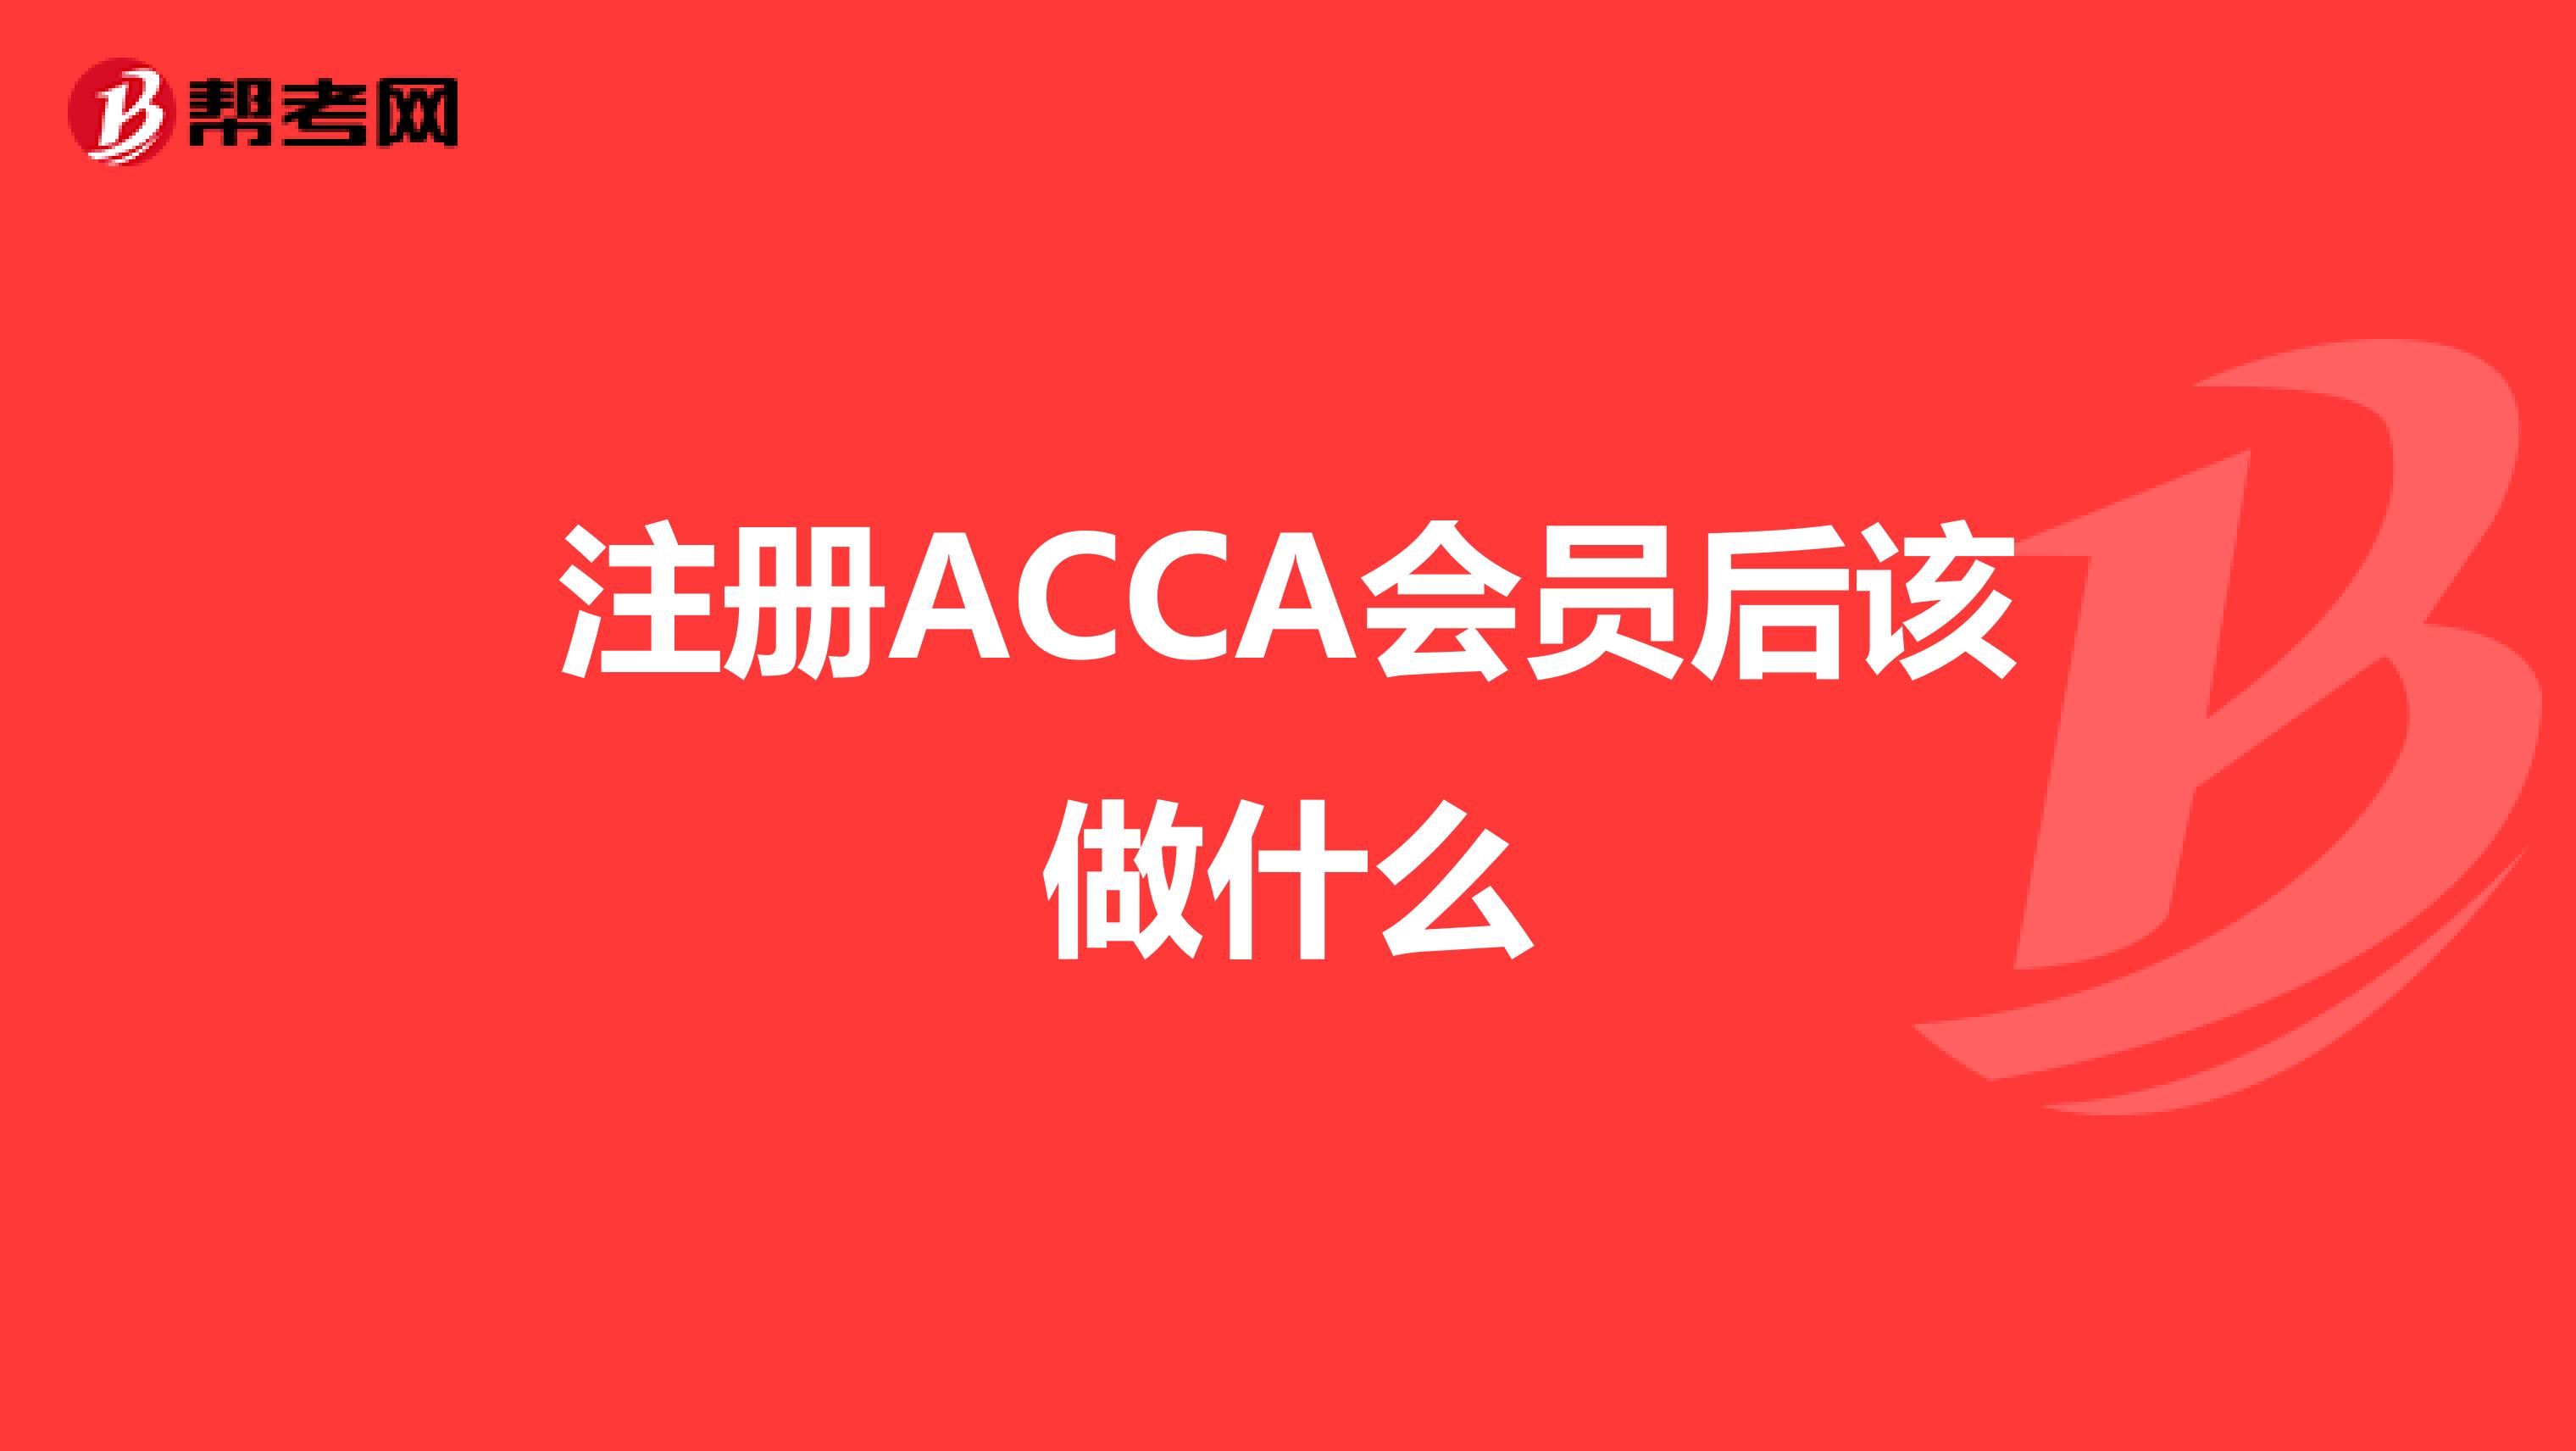 注册ACCA会员后该做什么